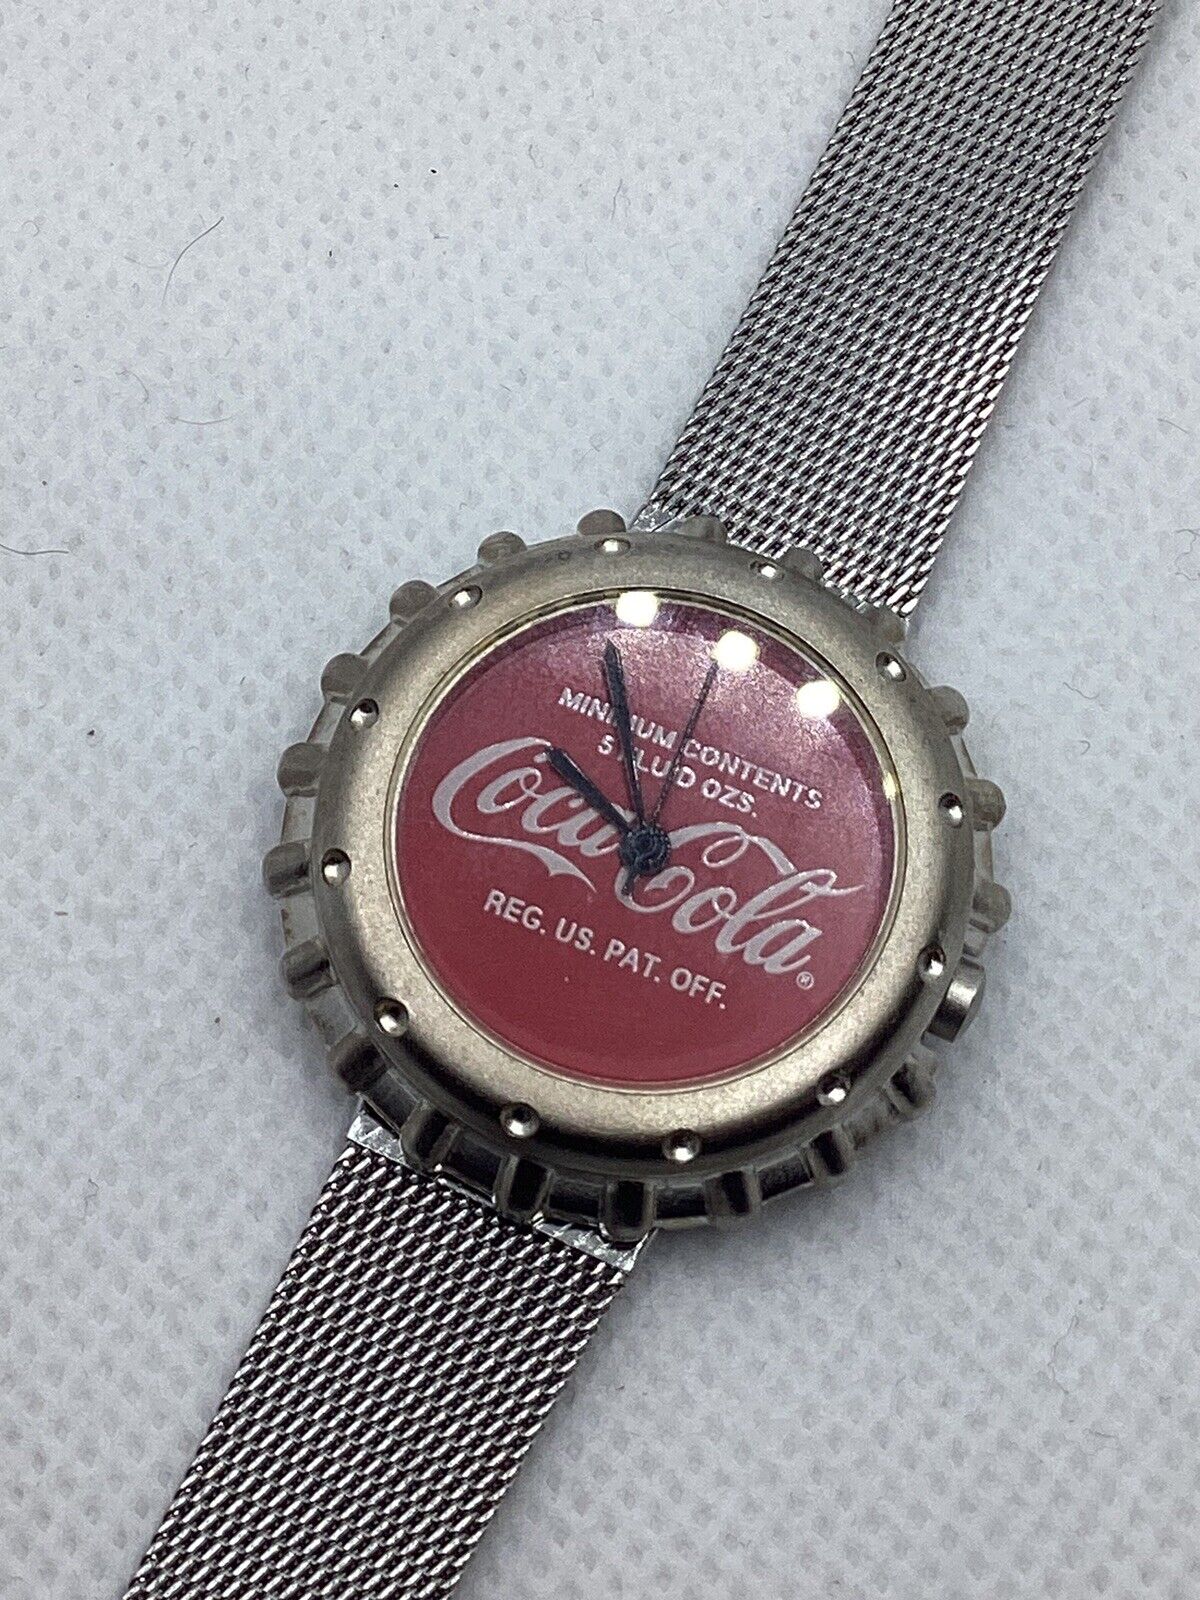 Vintage 1998 Coca Cola VOGES Soda Pop Cap Limited Edition Silver Mesh Watch Runs